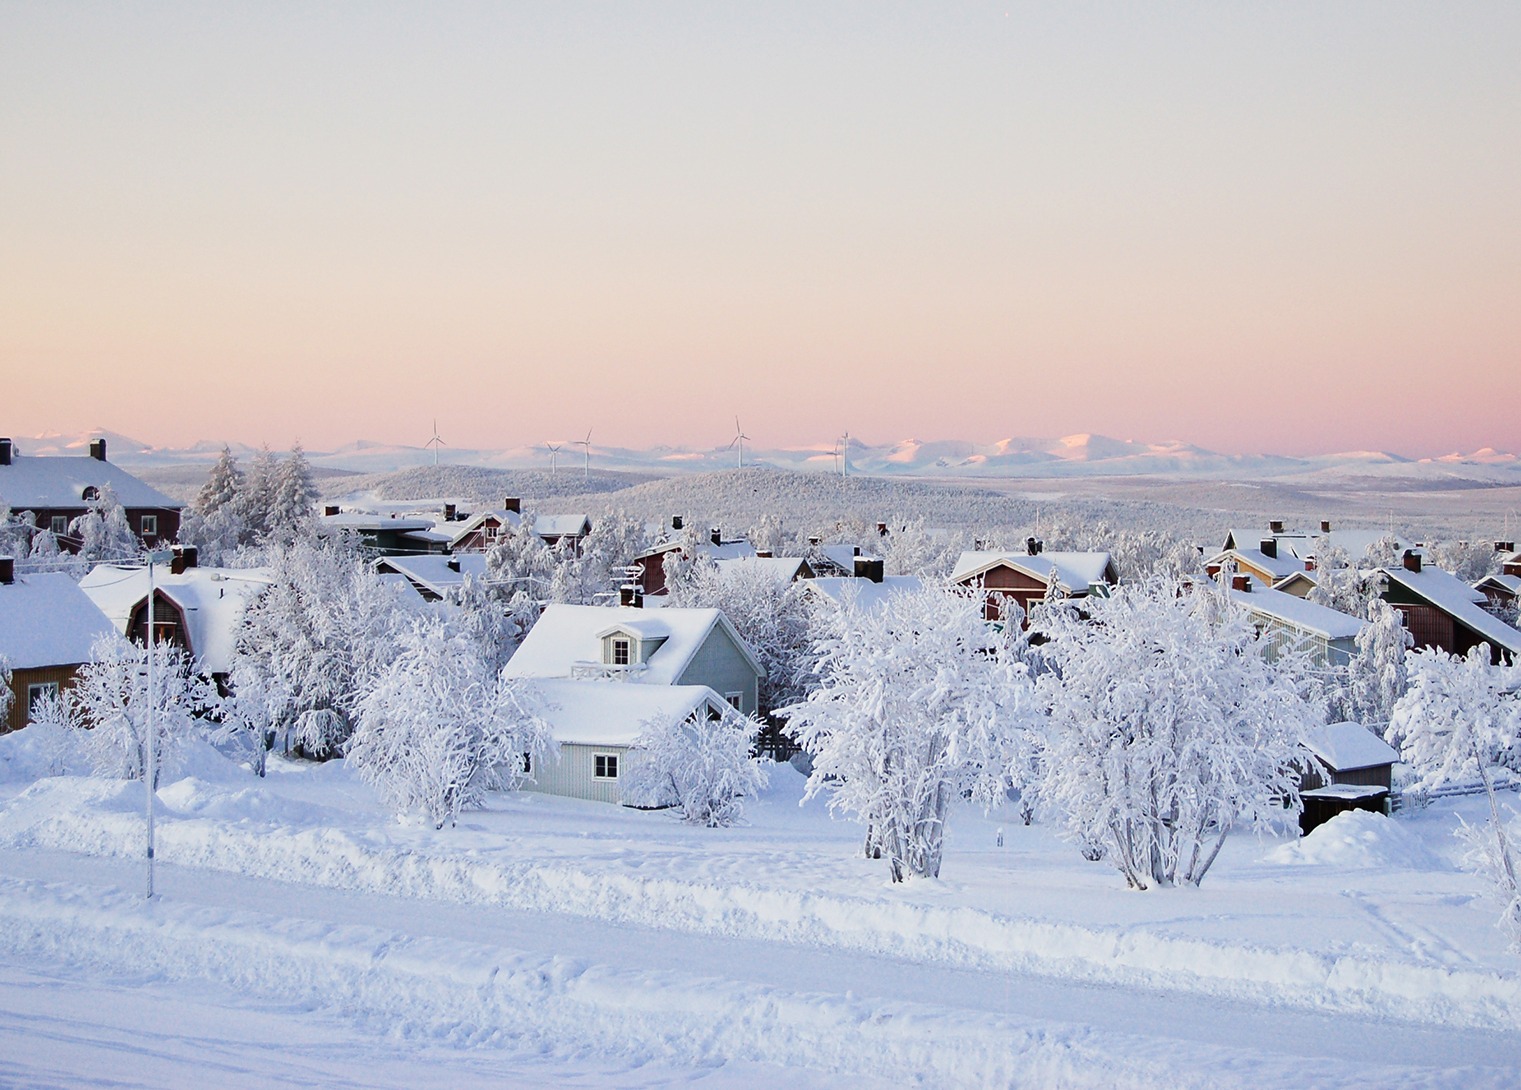 Отчет  о лыжном туристском спортивном походе 4 категории сложности по Северной Швеции